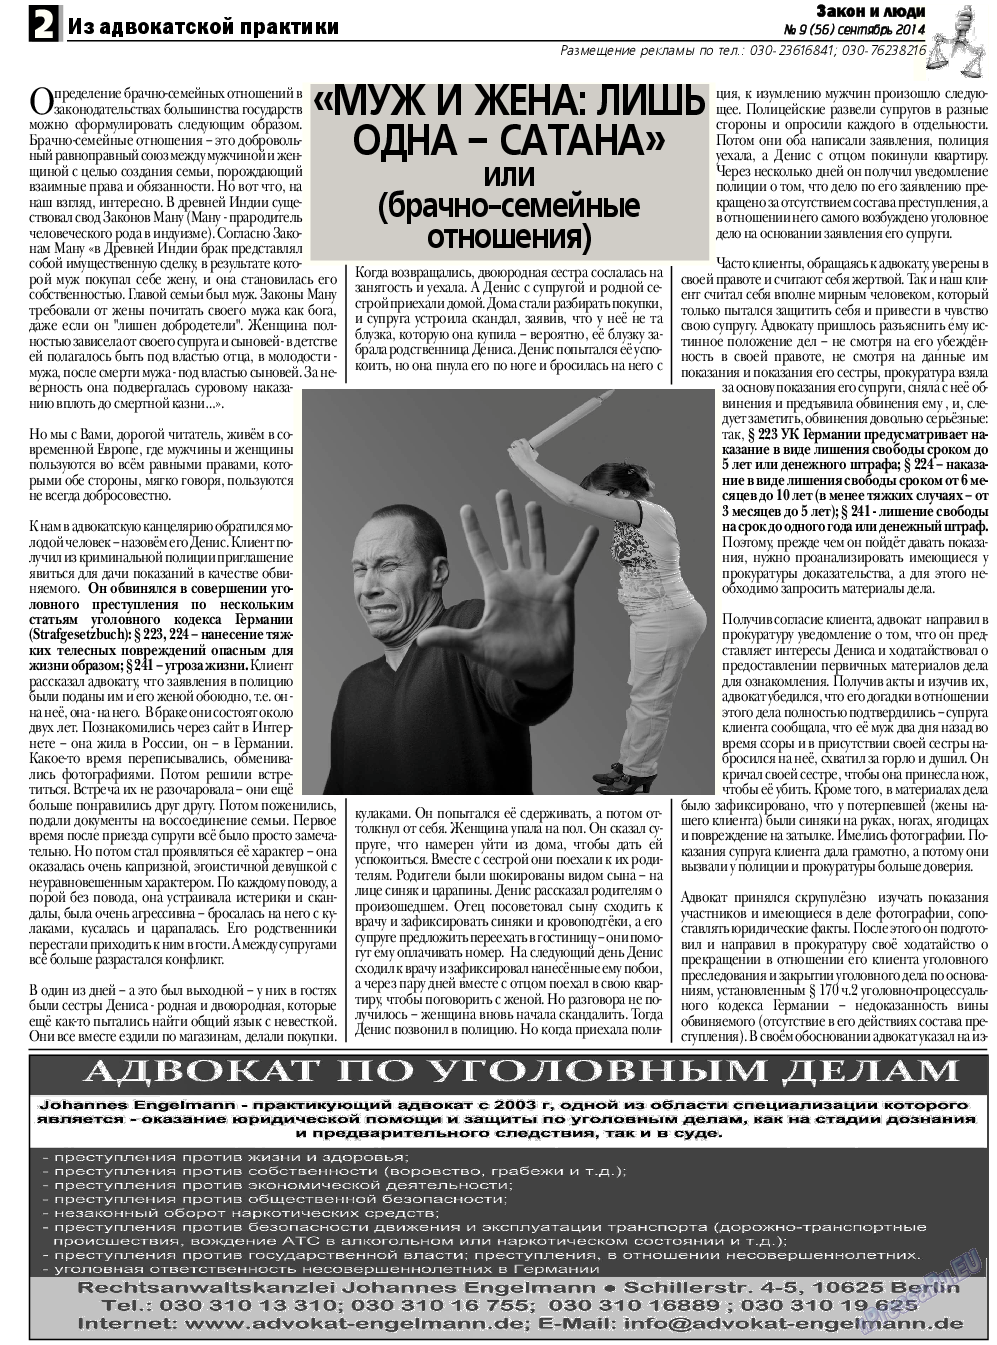 Закон и люди, газета. 2014 №9 стр.2